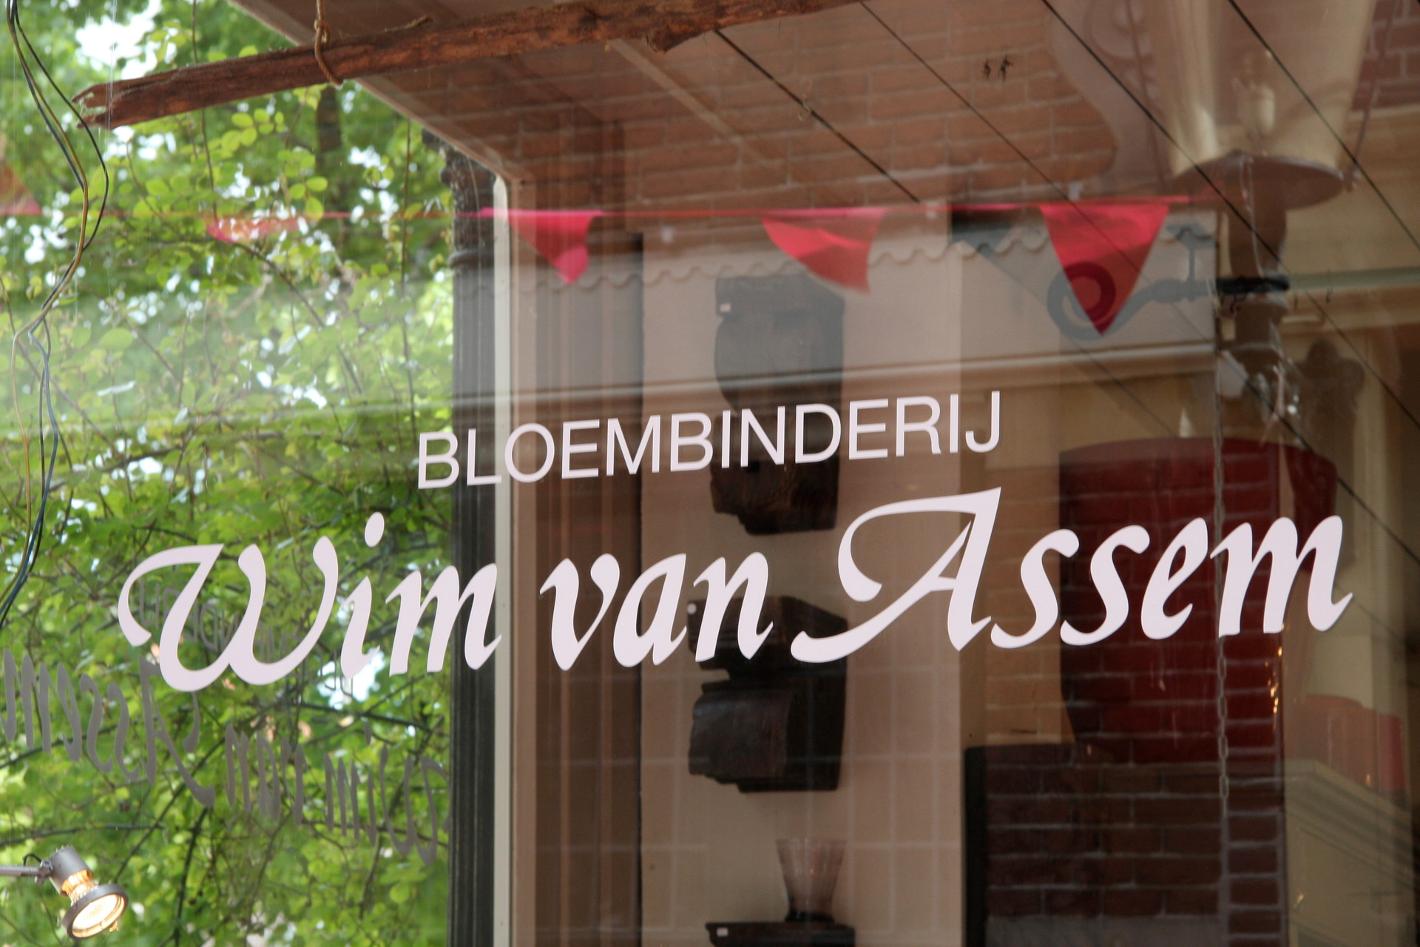 Photo Wim van Assem bloembinderij in Alkmaar, Shopping, Buy gifts, Buy home accessories - #1